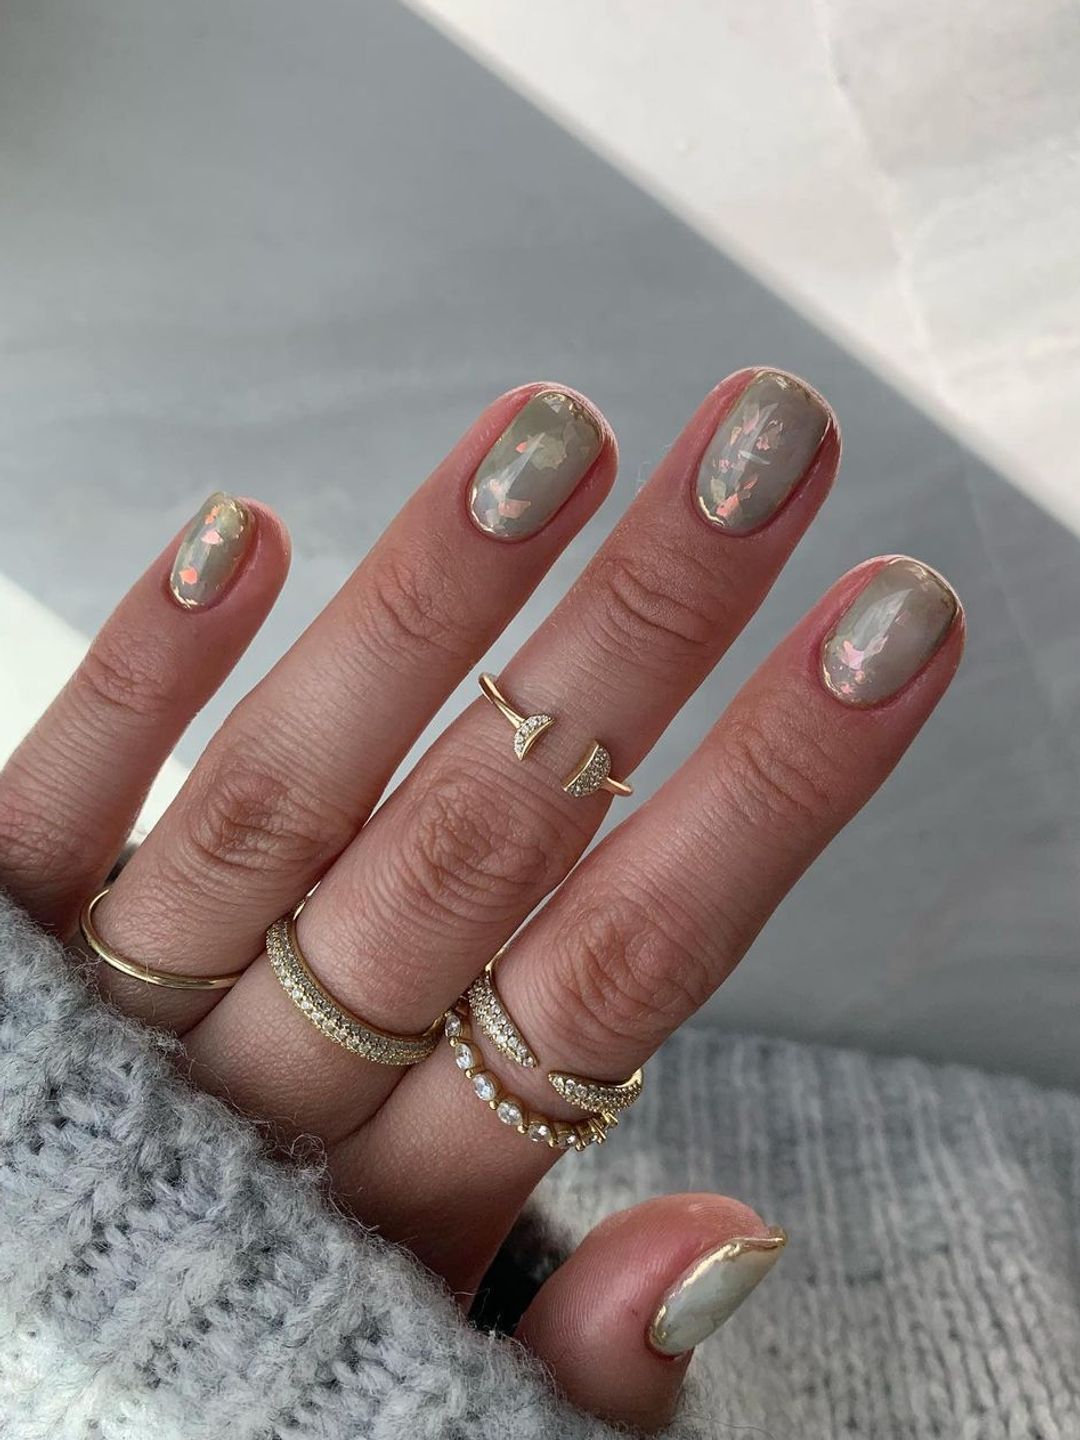 Opal nails 